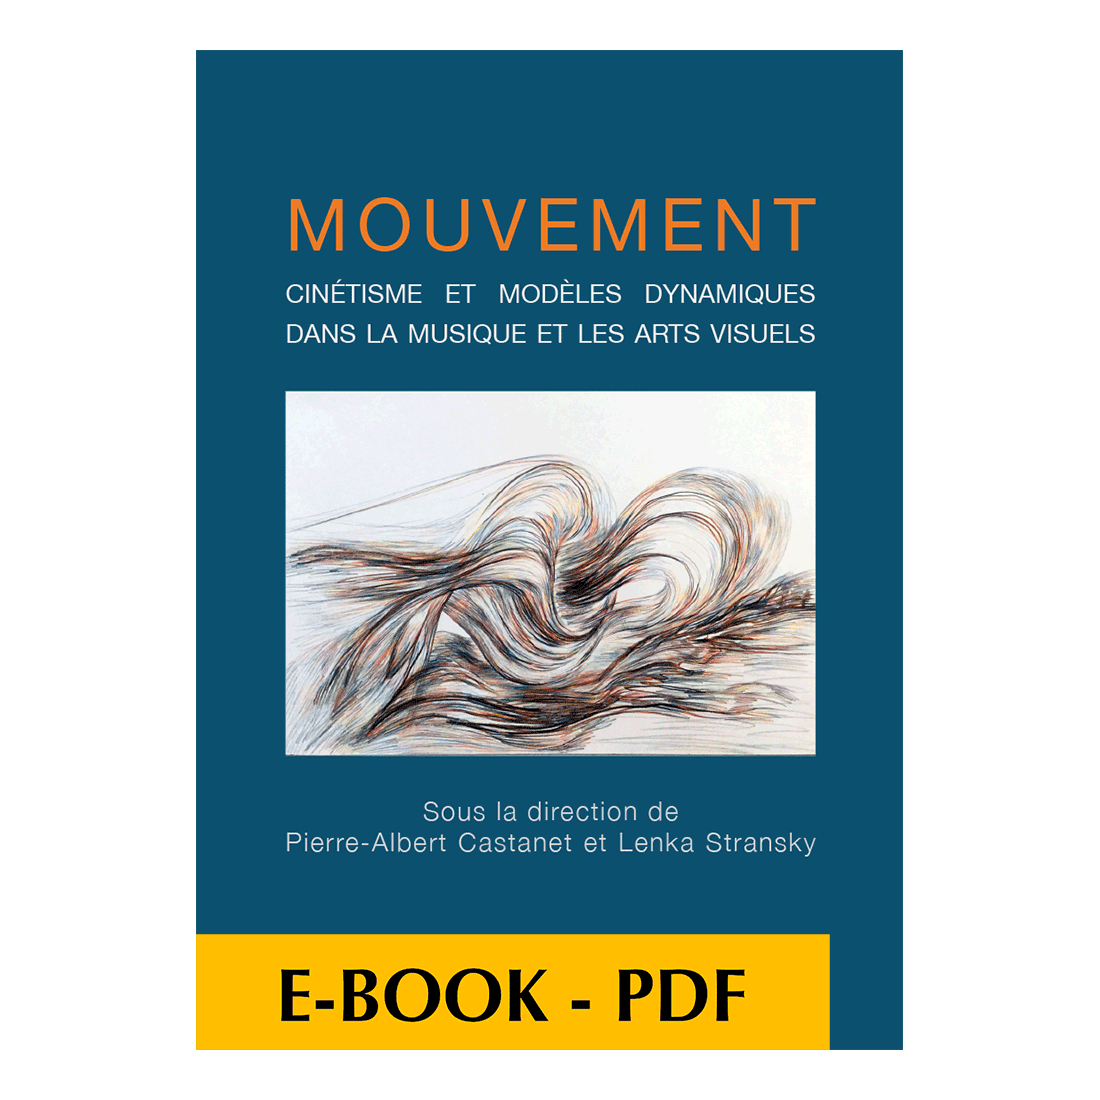 Mouvement - Cinétisme et modèles dynamiques dans la musique et les arts visuels - E-book PDF